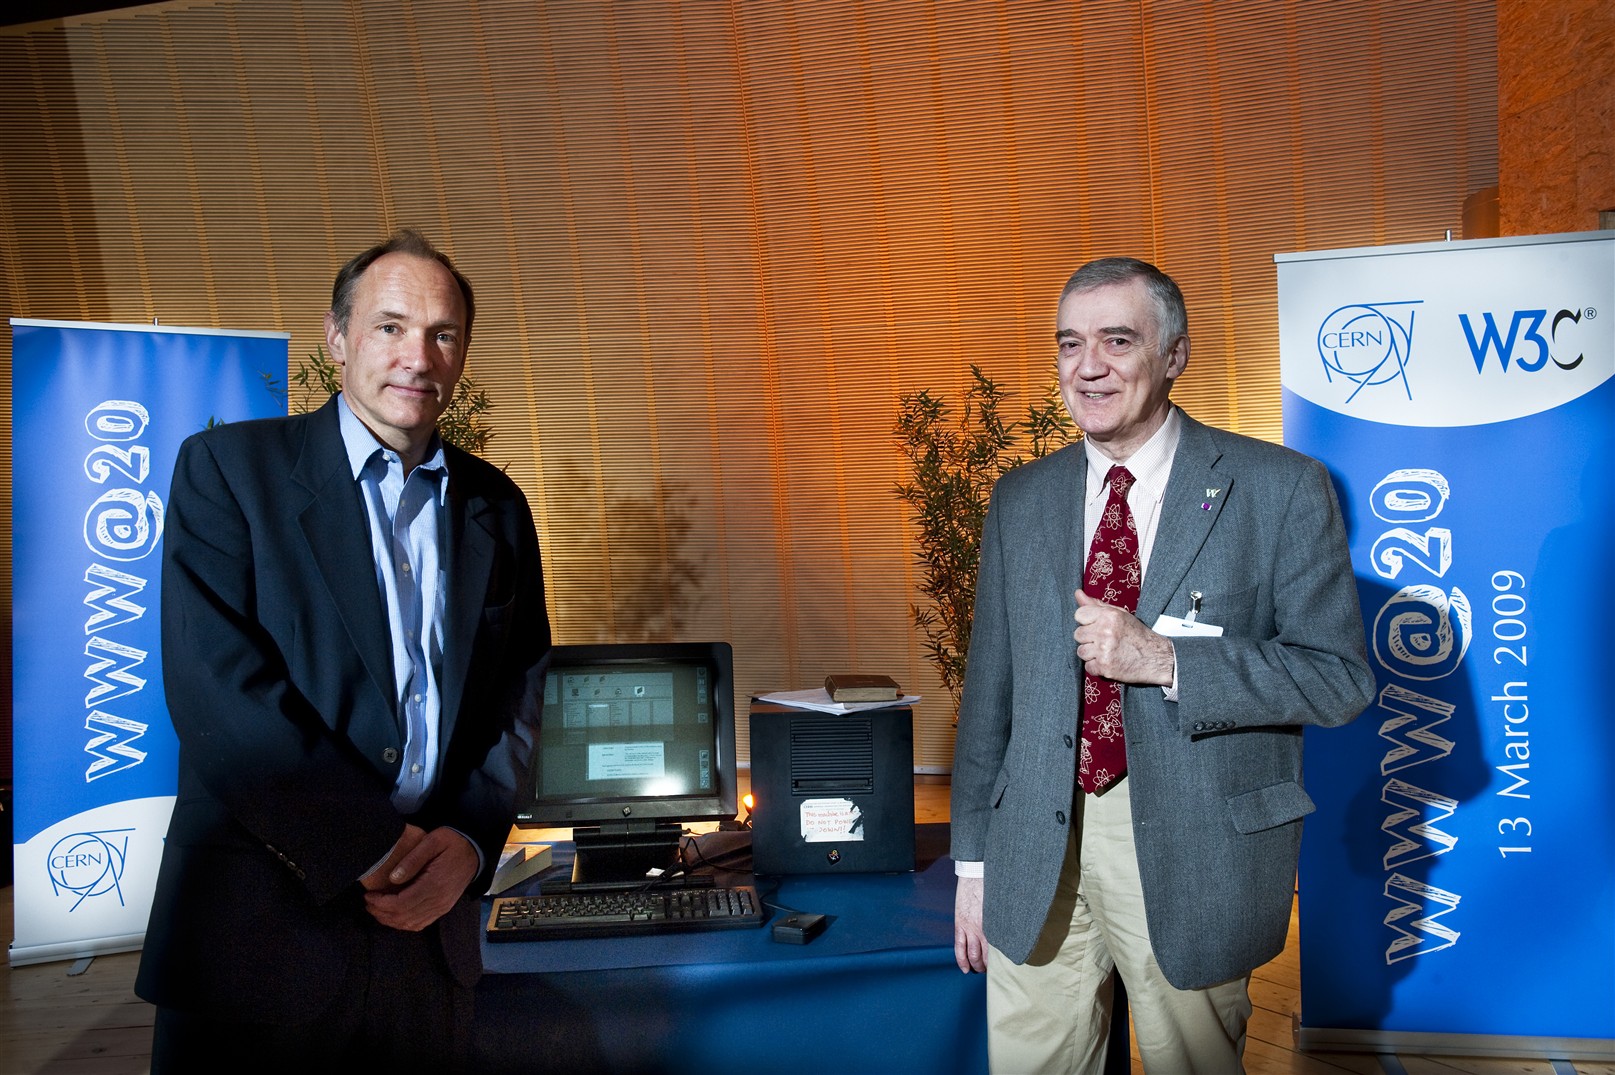 De gauche à droite, Tim Berners-Lee et Robert Cailliau, les deux pionniers du WWW lors de son vingtième anniversaire au Cern. © Cern